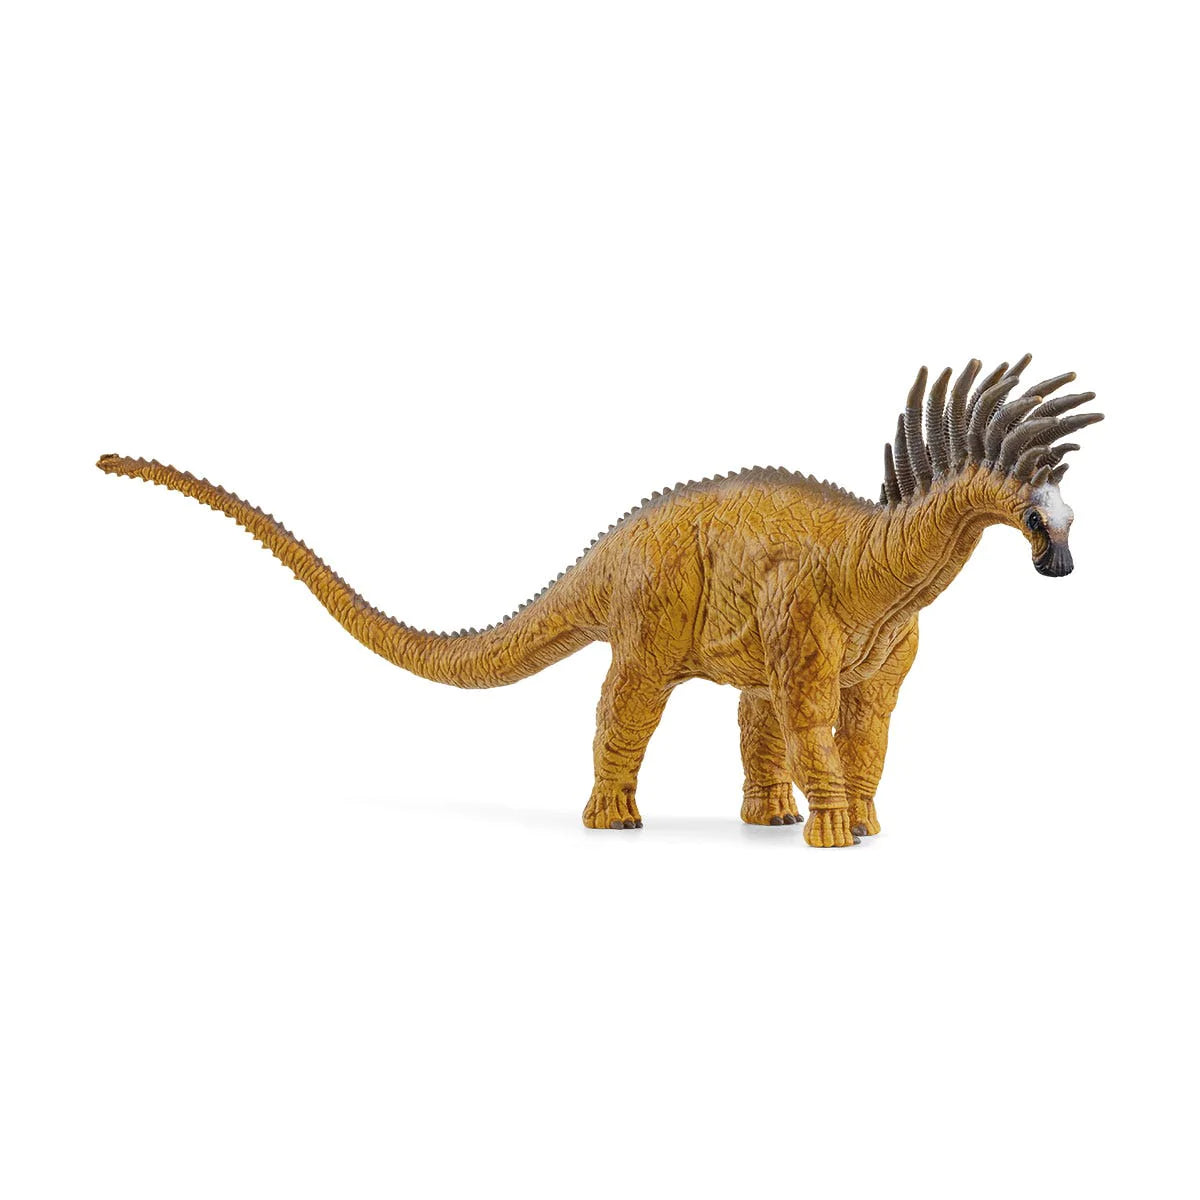 Schleich - Dinosaurs Bajadasaurus